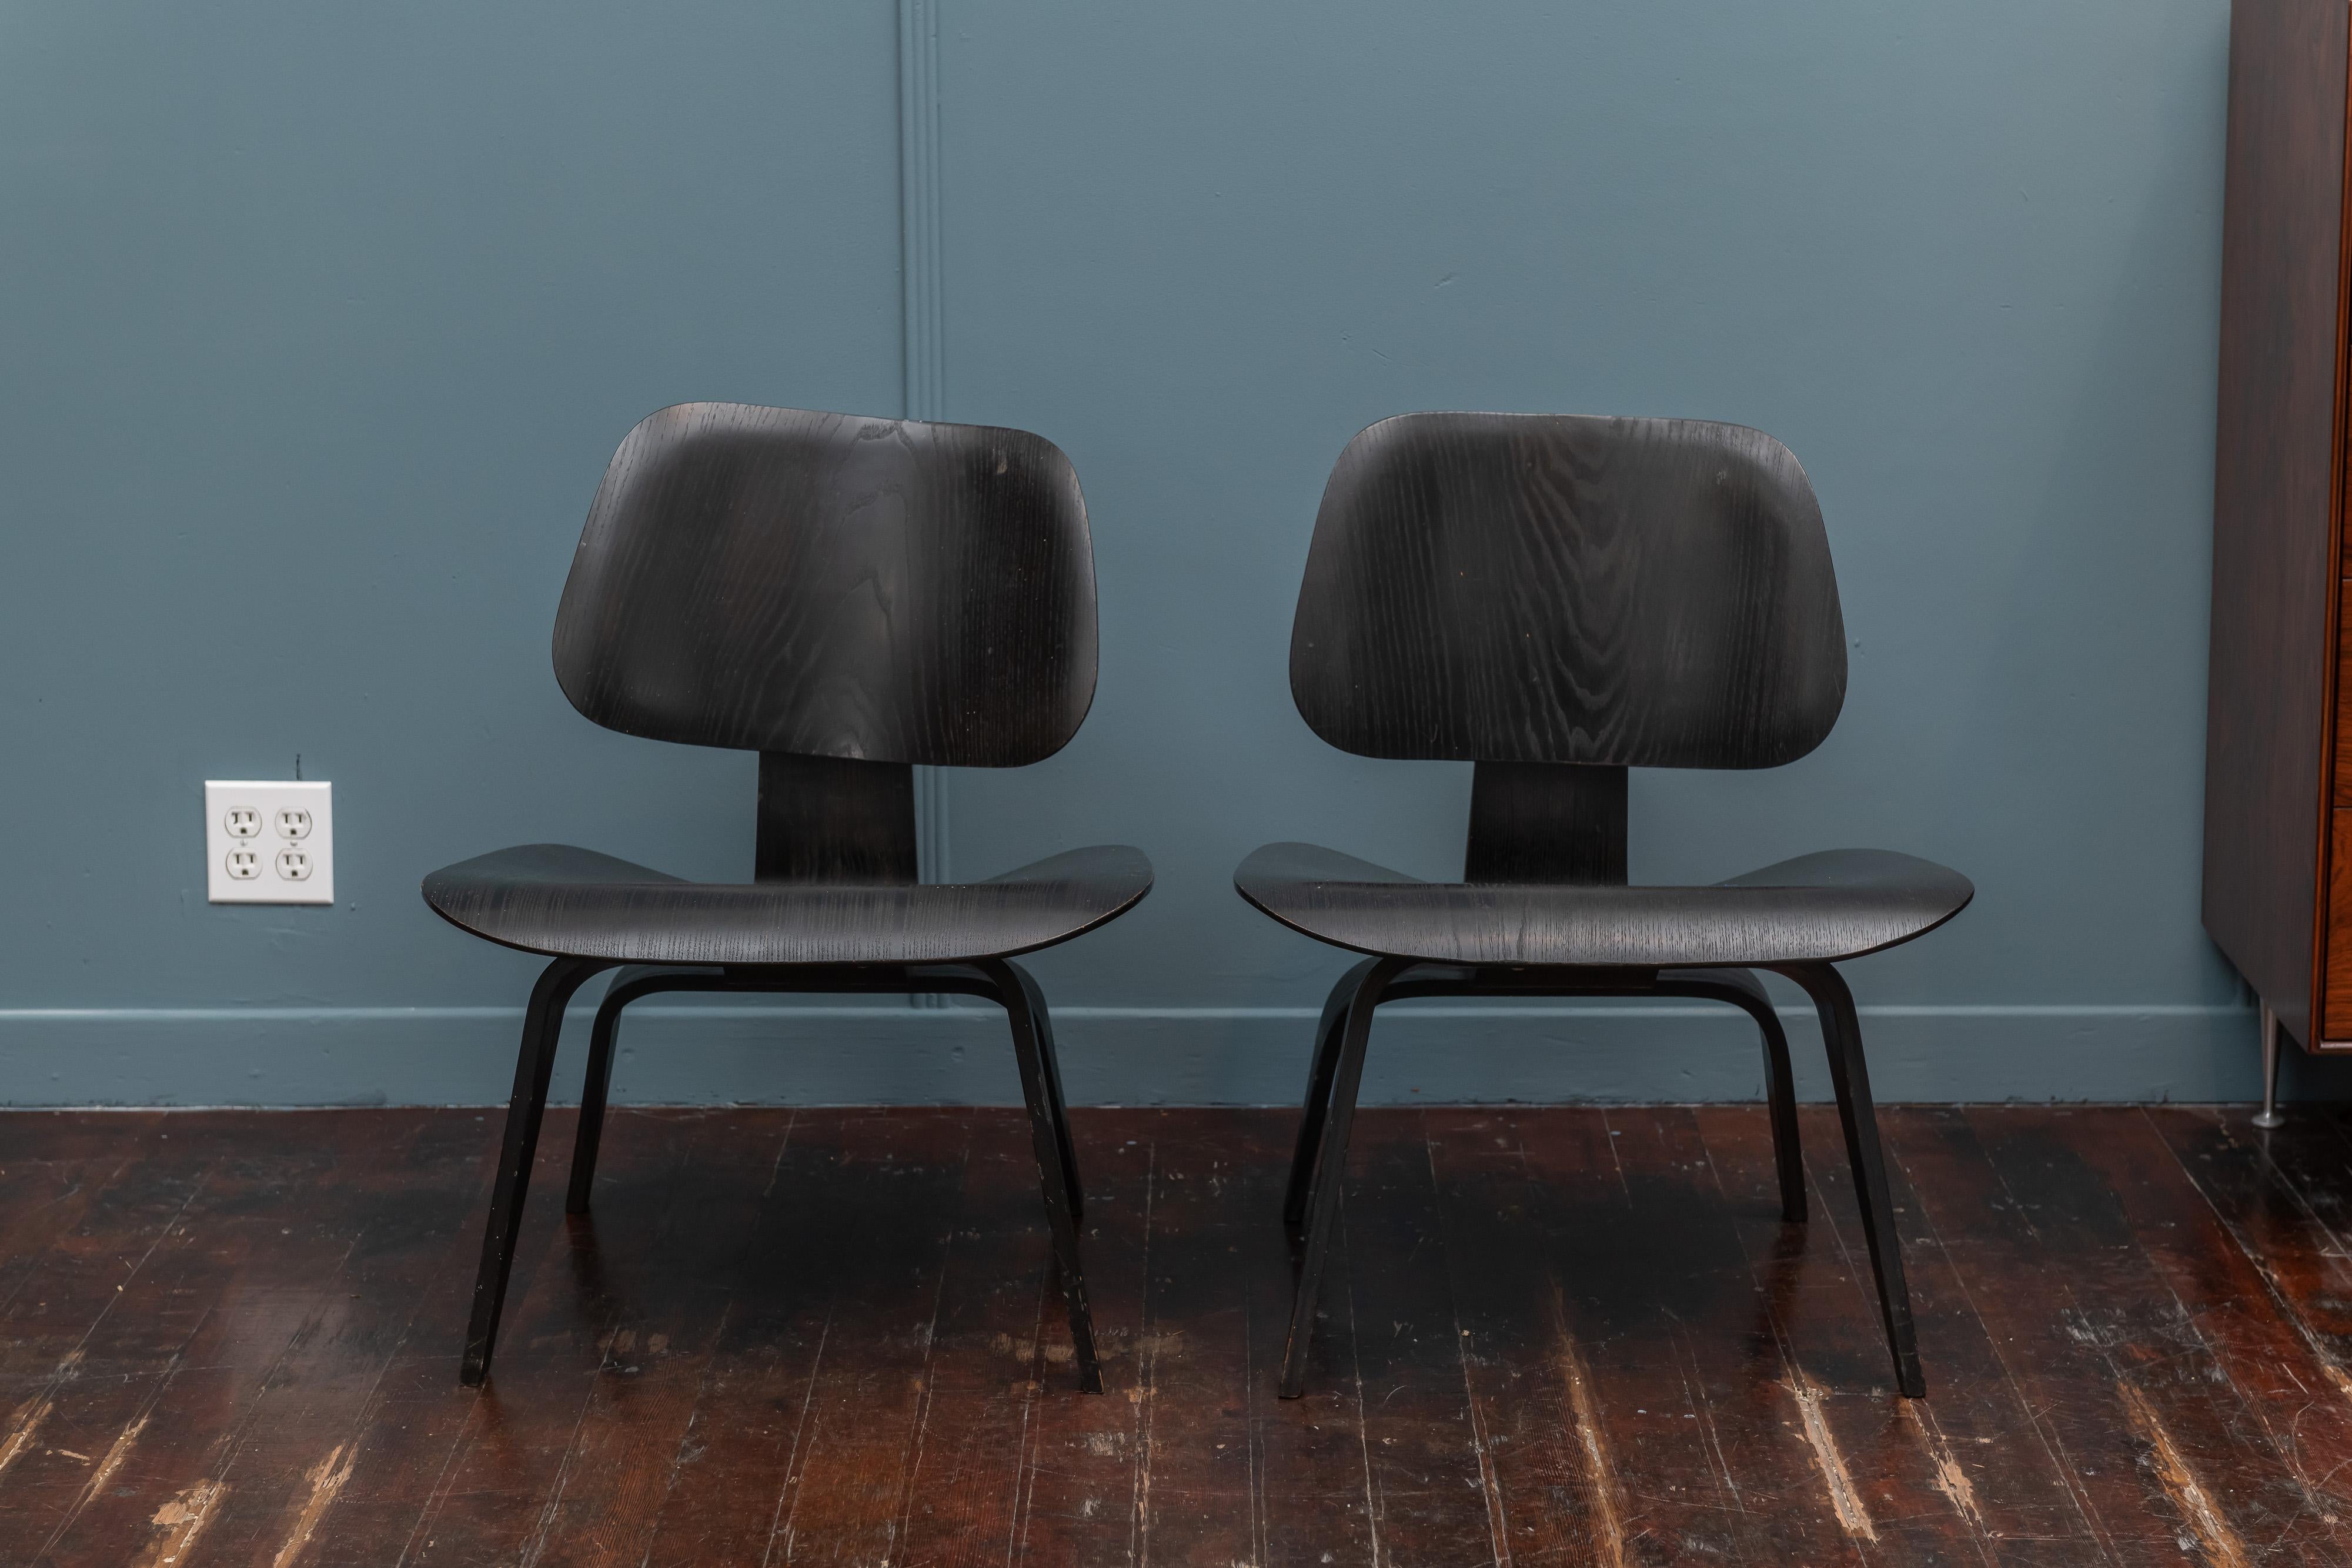 Seltenes Paar frühe Produktion (5 x 2 x 5 Schraubbefestigungen) Charles Eames Design LCW (Lounge Chair Holz). Originale schwarze Analine-Lackierung in sehr gutem Originalzustand.
Eine hintere Stoßdämpferhalterung ist getrennt, aber stabil und